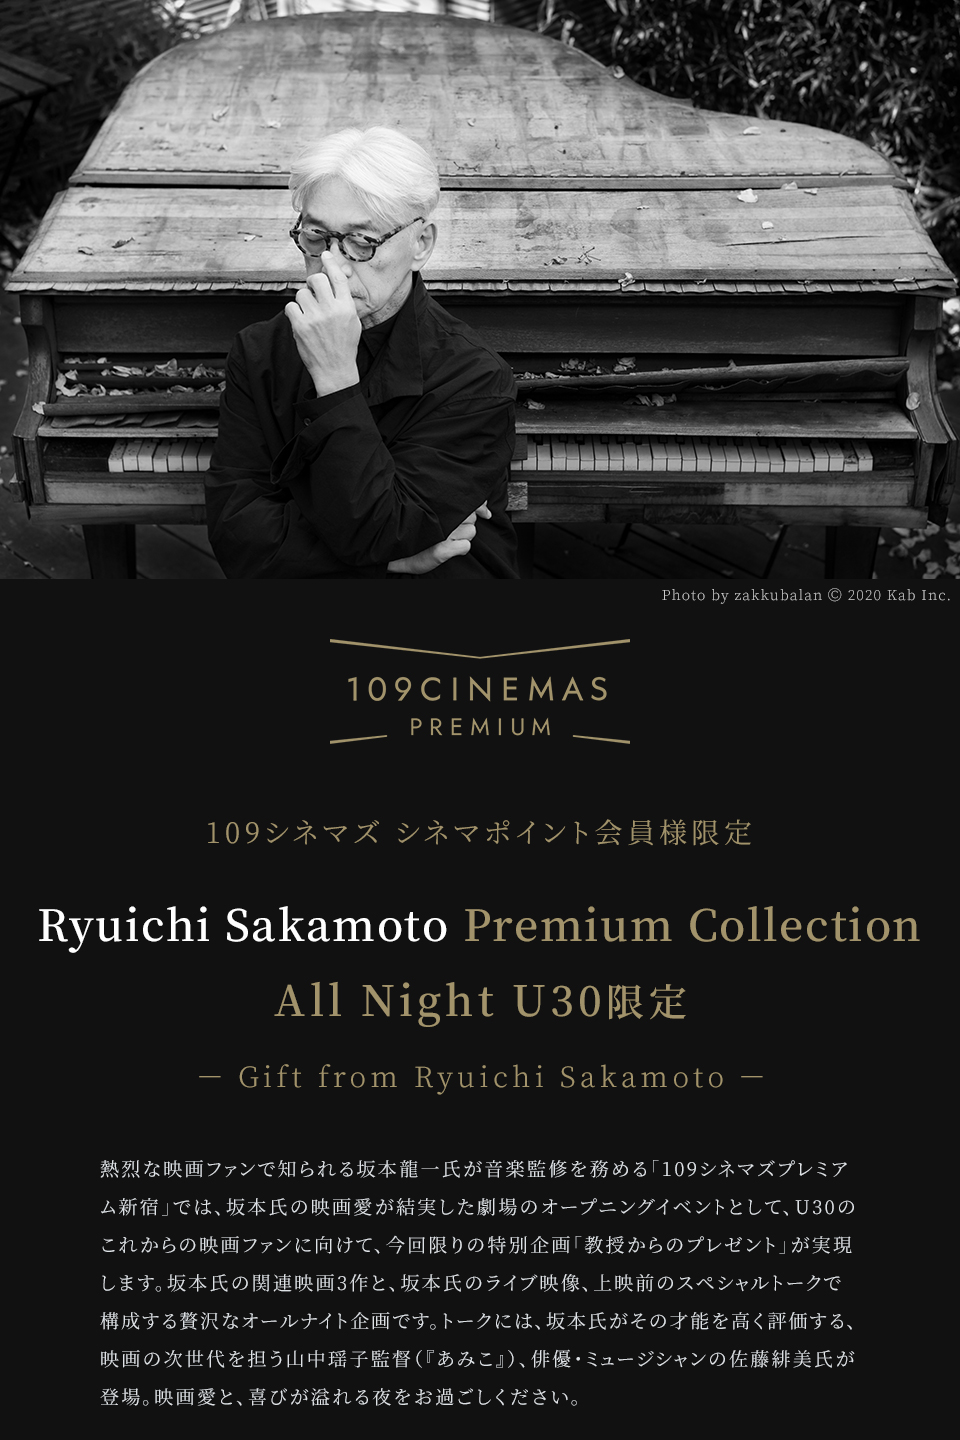 109シネマズ PREMIUM 109シネマズ シネマポイント会員様限定 Ryuichi Sakamoto Premium Collection All Night U30限定 － Gift from Ryuichi Sakamoto － 熱烈な映画ファンで知られる坂本龍一氏が音楽監修を務める「109シネマズプレミアム新宿」では、坂本氏の映画愛が結実した劇場のオープニングイベントとして、U30のこれからの映画ファンに向けて、今回限りの特別企画「教授からのプレゼント」が実現します。坂本氏の関連映画3作と、坂本氏のライブ映像、上映前のスペシャルトークで構成する贅沢なオールナイト企画です。トークには、坂本氏がその才能を高く評価する、映画の次世代を担う山中瑶子監督（『あみこ』）、俳優・ミュージシャンの佐藤緋美氏が登場。映画愛と、喜びが溢れる夜をお過ごしください。